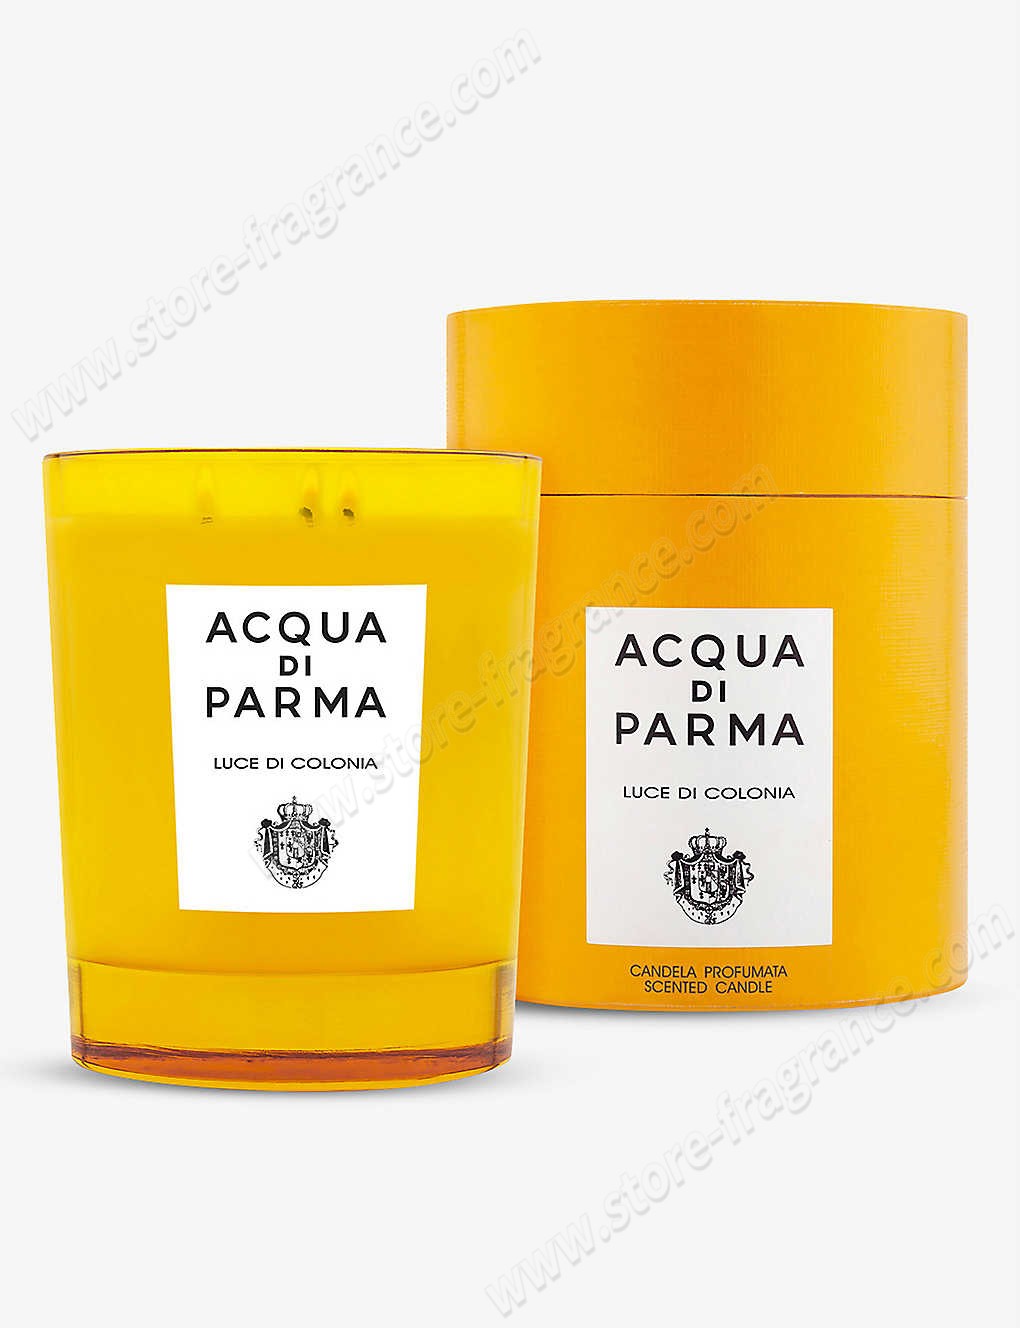 ACQUA DI PARMA/Luce di Colonia scented candle 500g ✿ Discount Store - ACQUA DI PARMA/Luce di Colonia scented candle 500g ✿ Discount Store